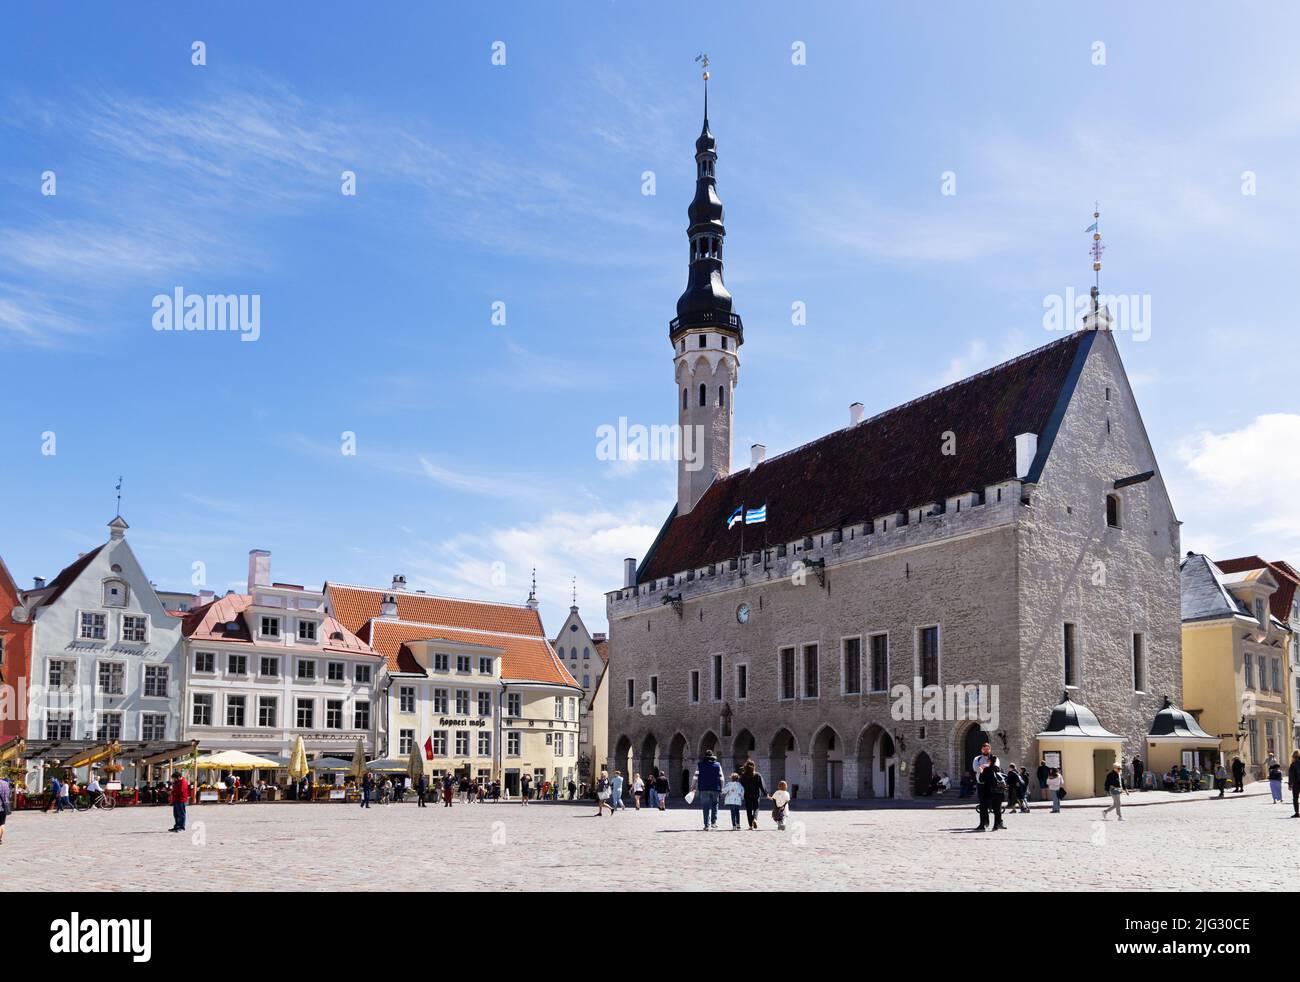 La place de l'ancien hôtel de ville de Tallinn, et l'hôtel de ville datant de 1500s, aujourd'hui une destination touristique populaire pour le voyage et une escapade en ville, Tallinn Estonie Banque D'Images